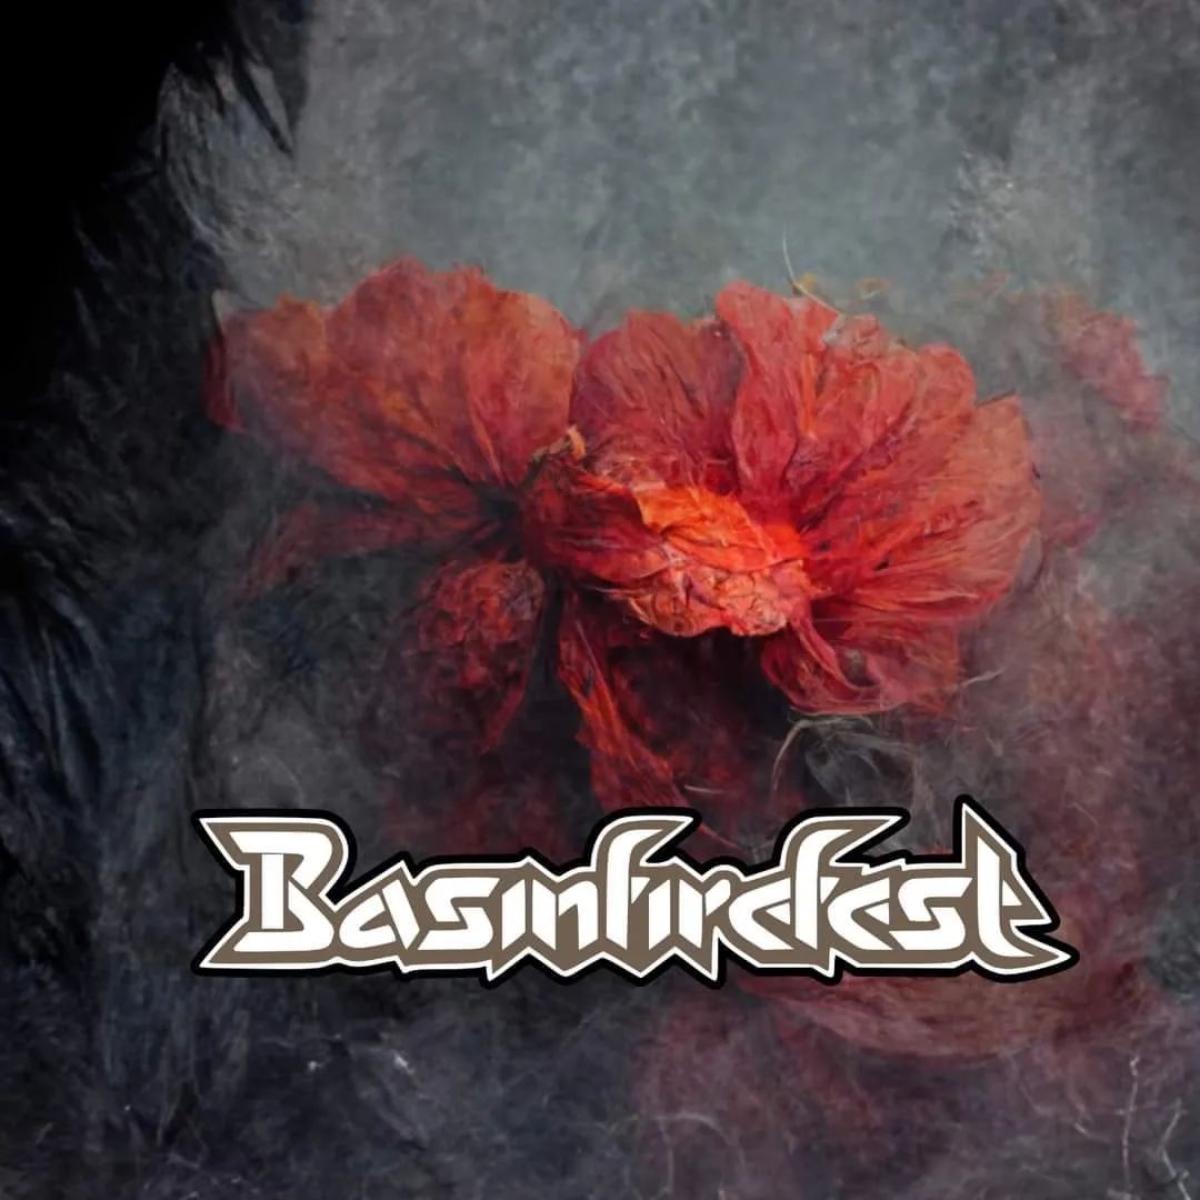 Basinfirefest